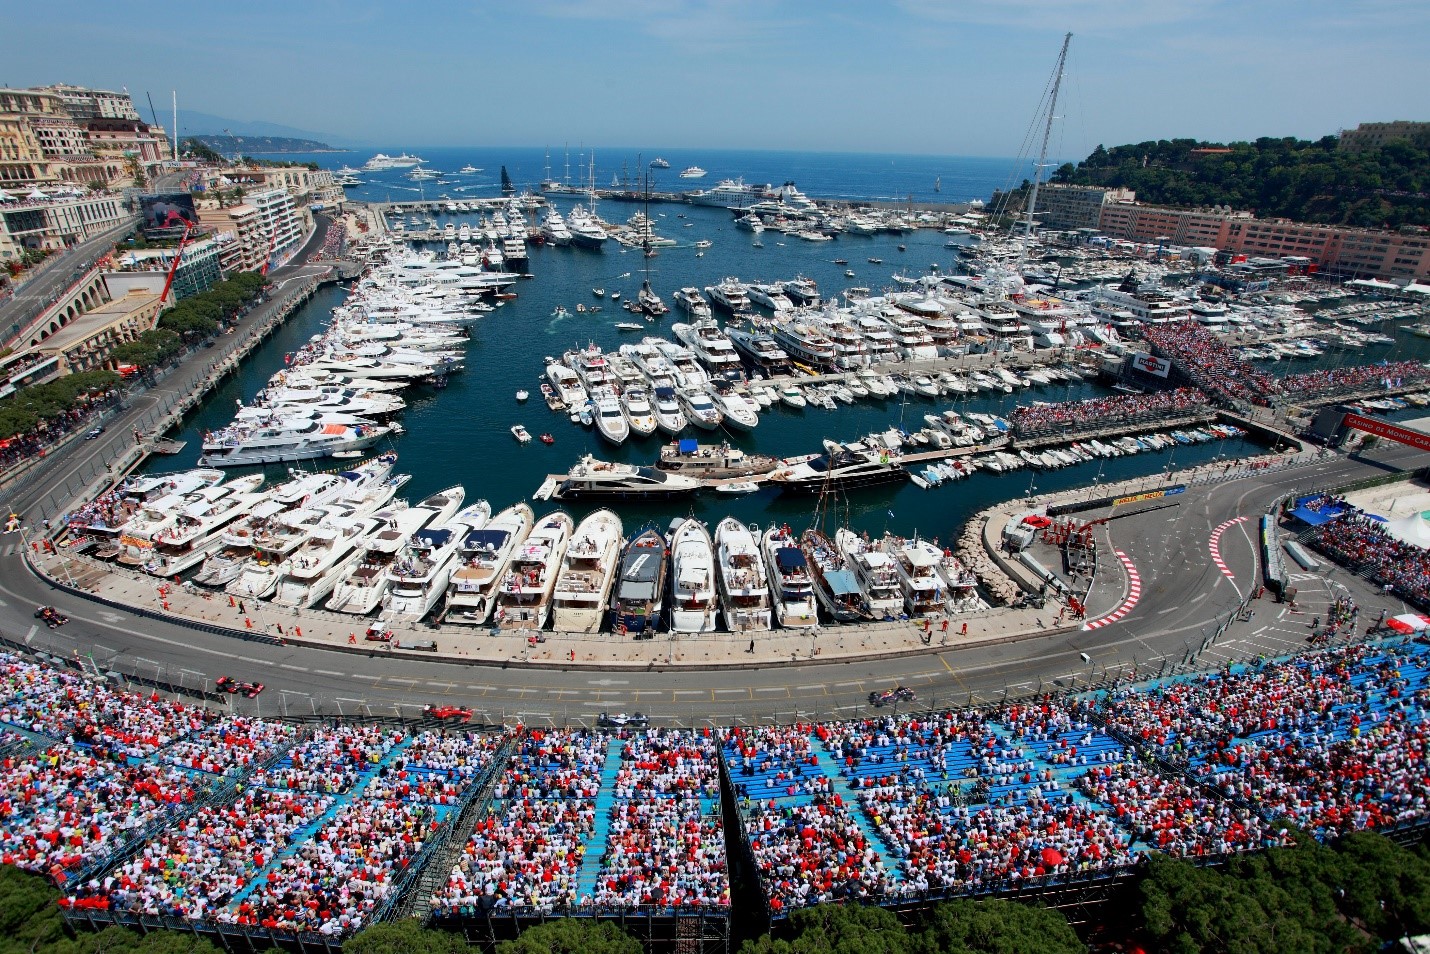 A Monaco Grand Prix.